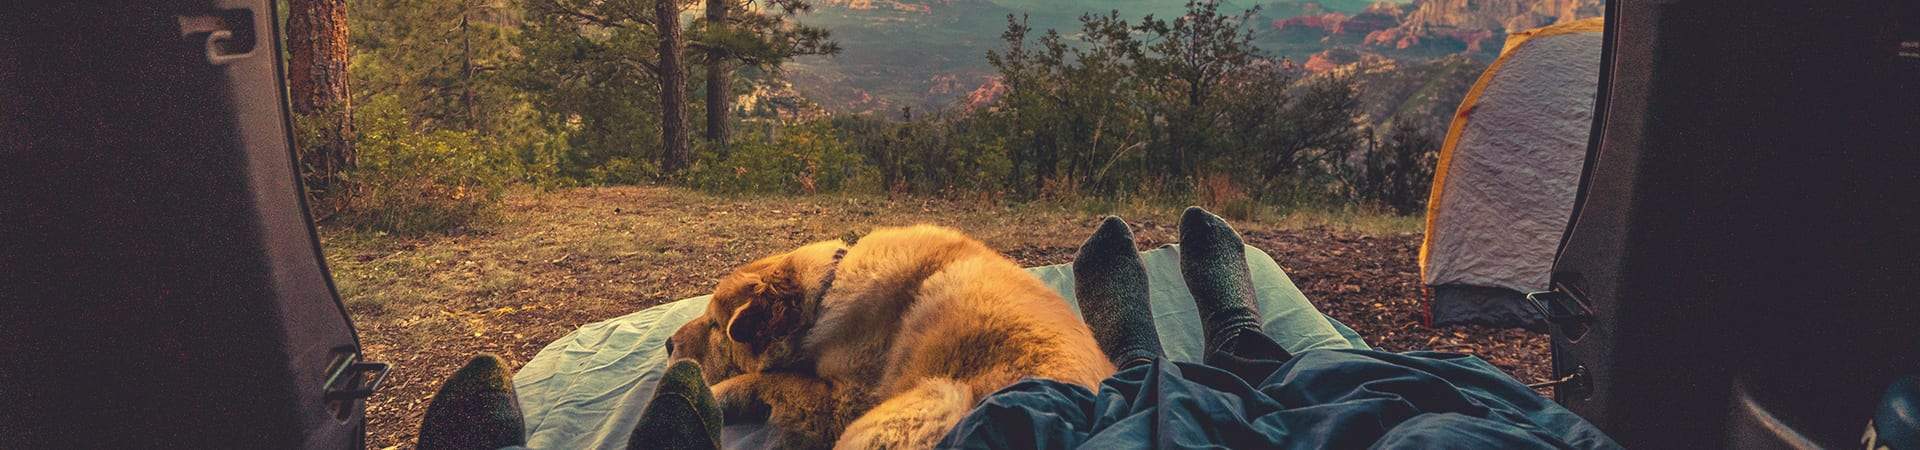 Dog Beds & Blankets for Hiking, Camping and Overlanding | Maverek